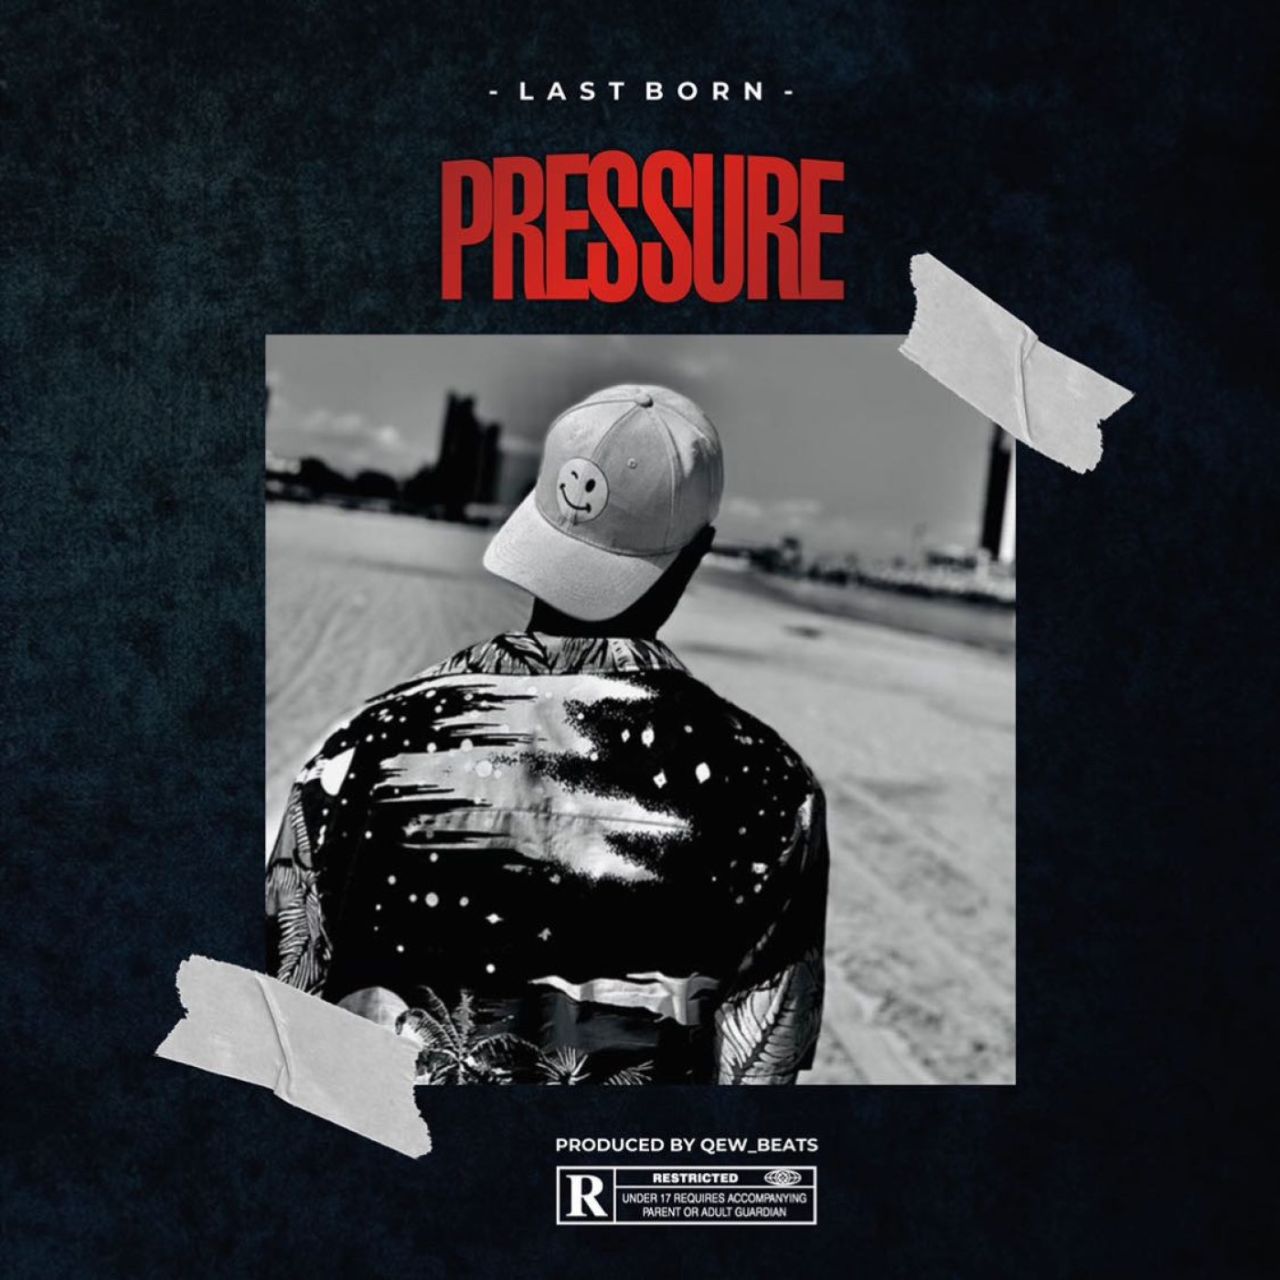 Lastborn - Pressure